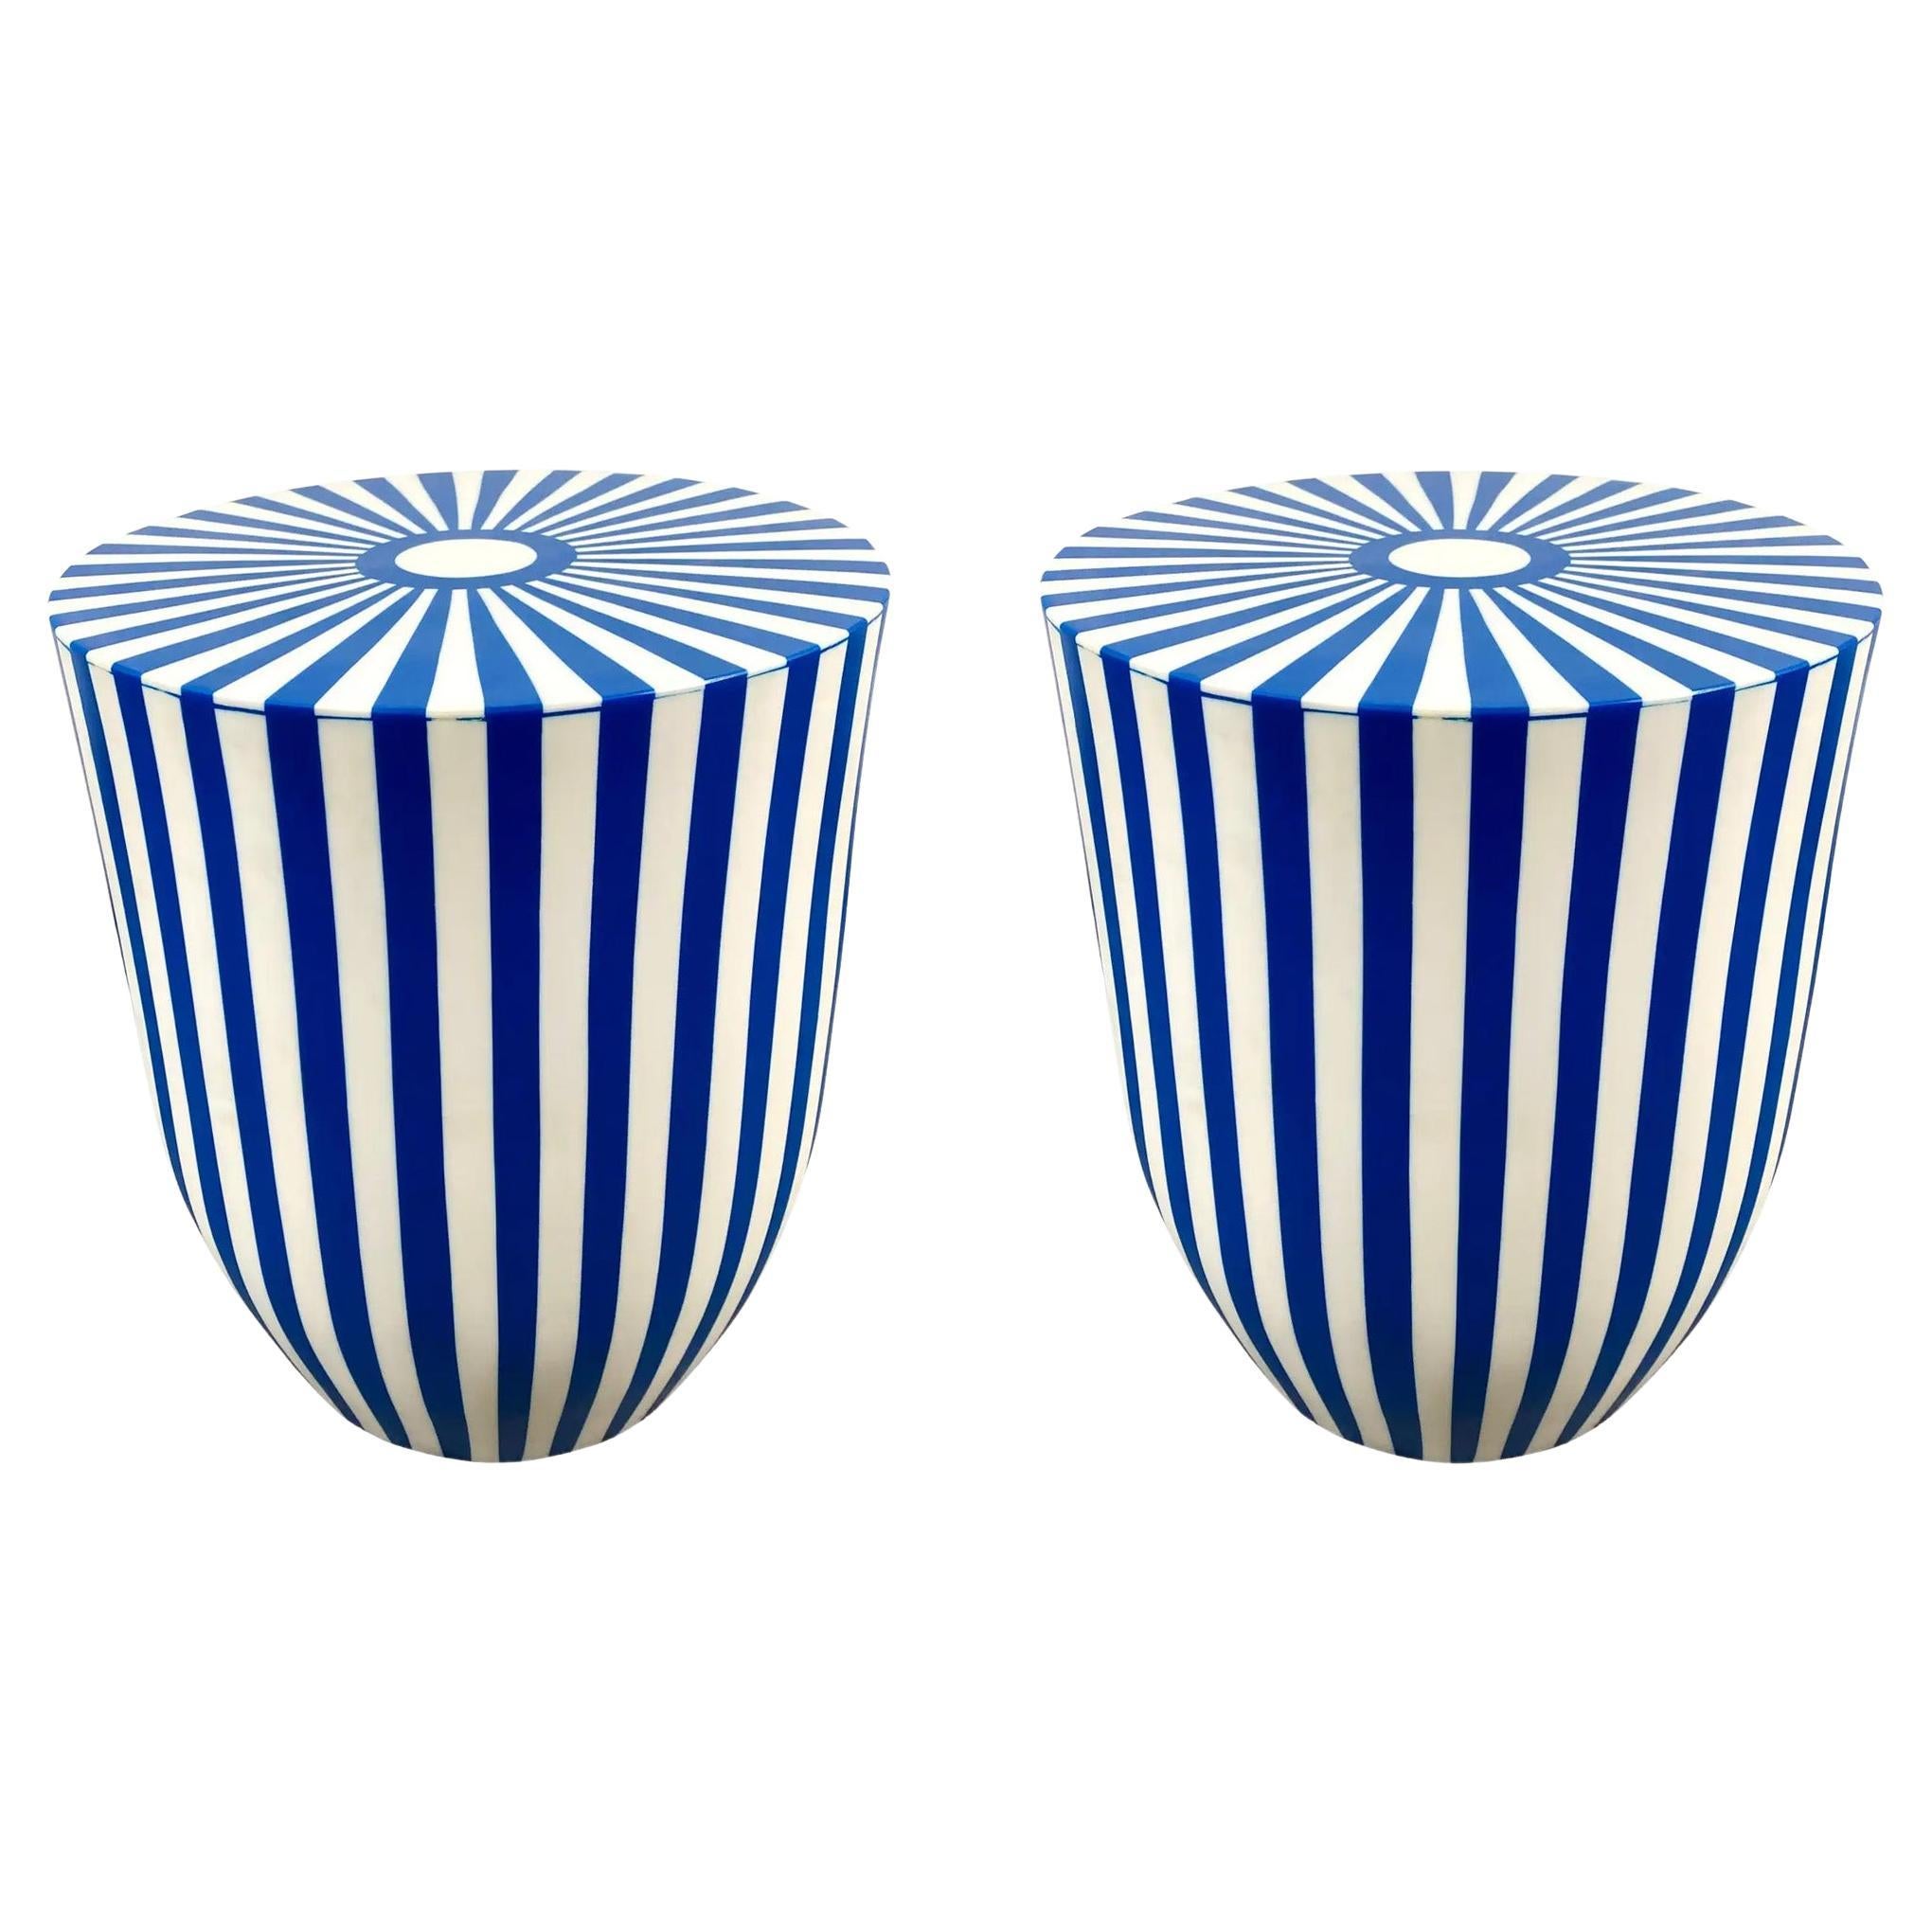 Table d'appoint ou tabouret cylindrique en résine bleue et blanche de style Art Déco, une paire